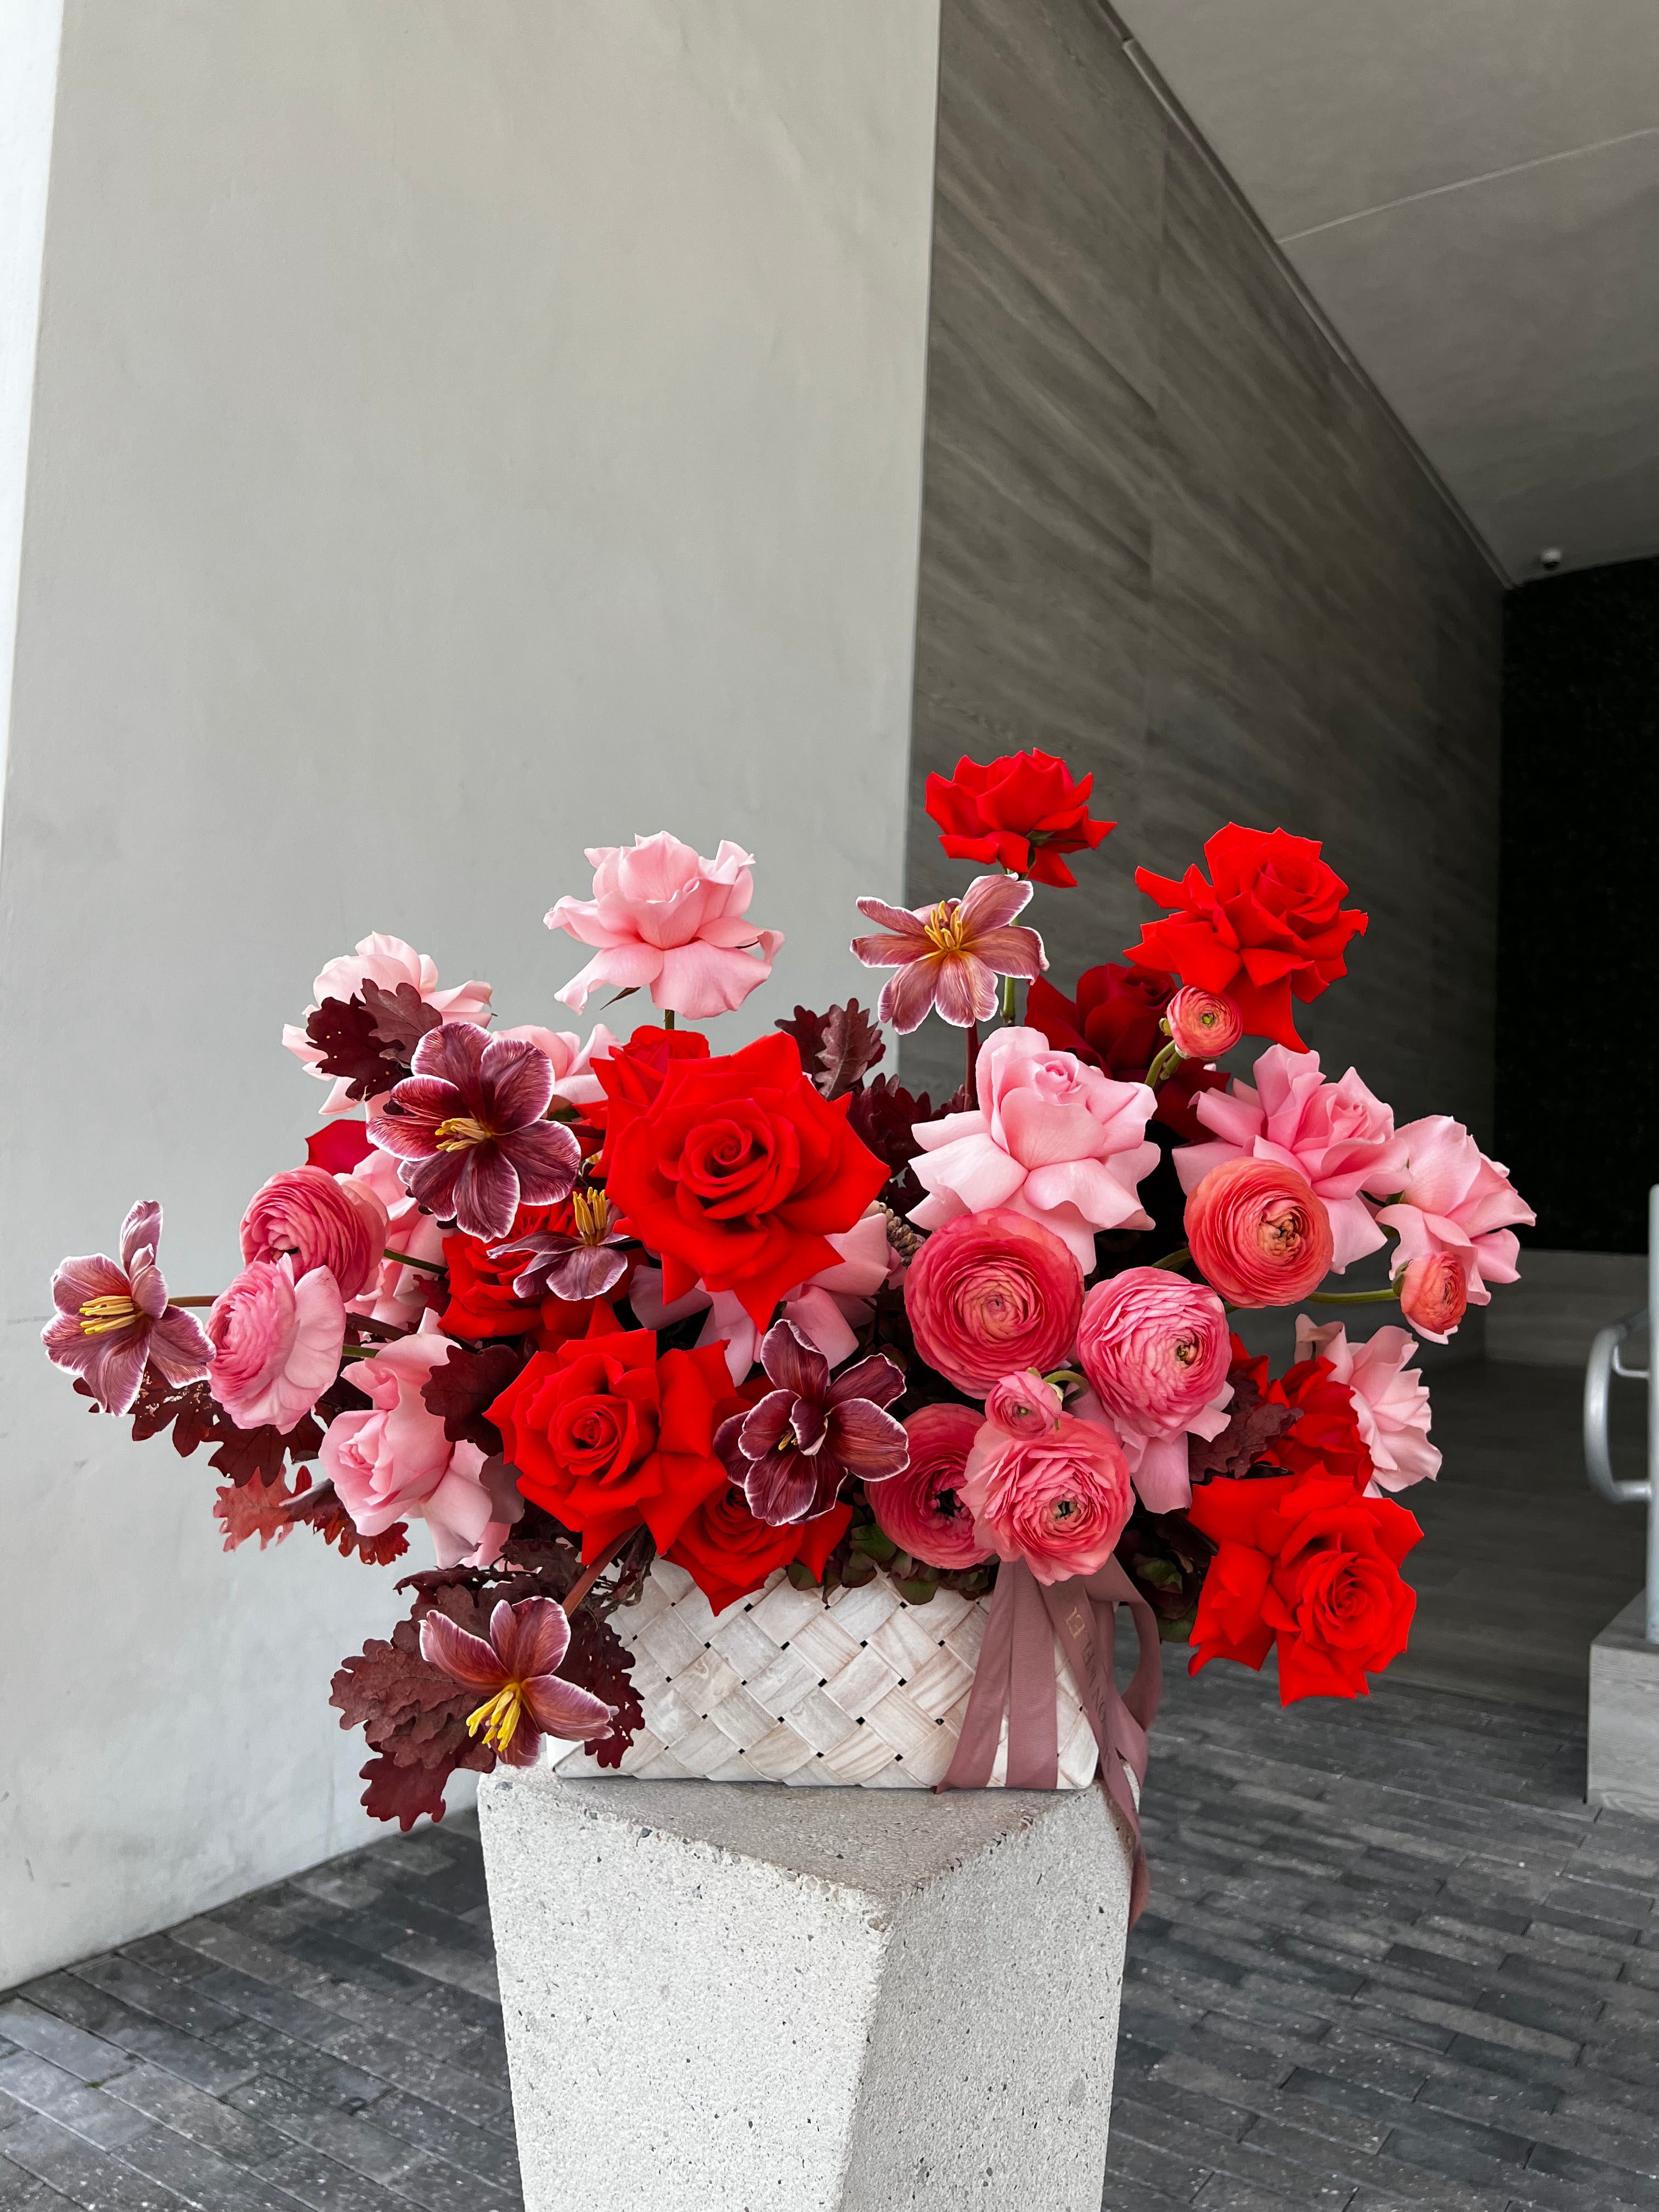 Romantique - Flower arrangement in a Bottega style basket